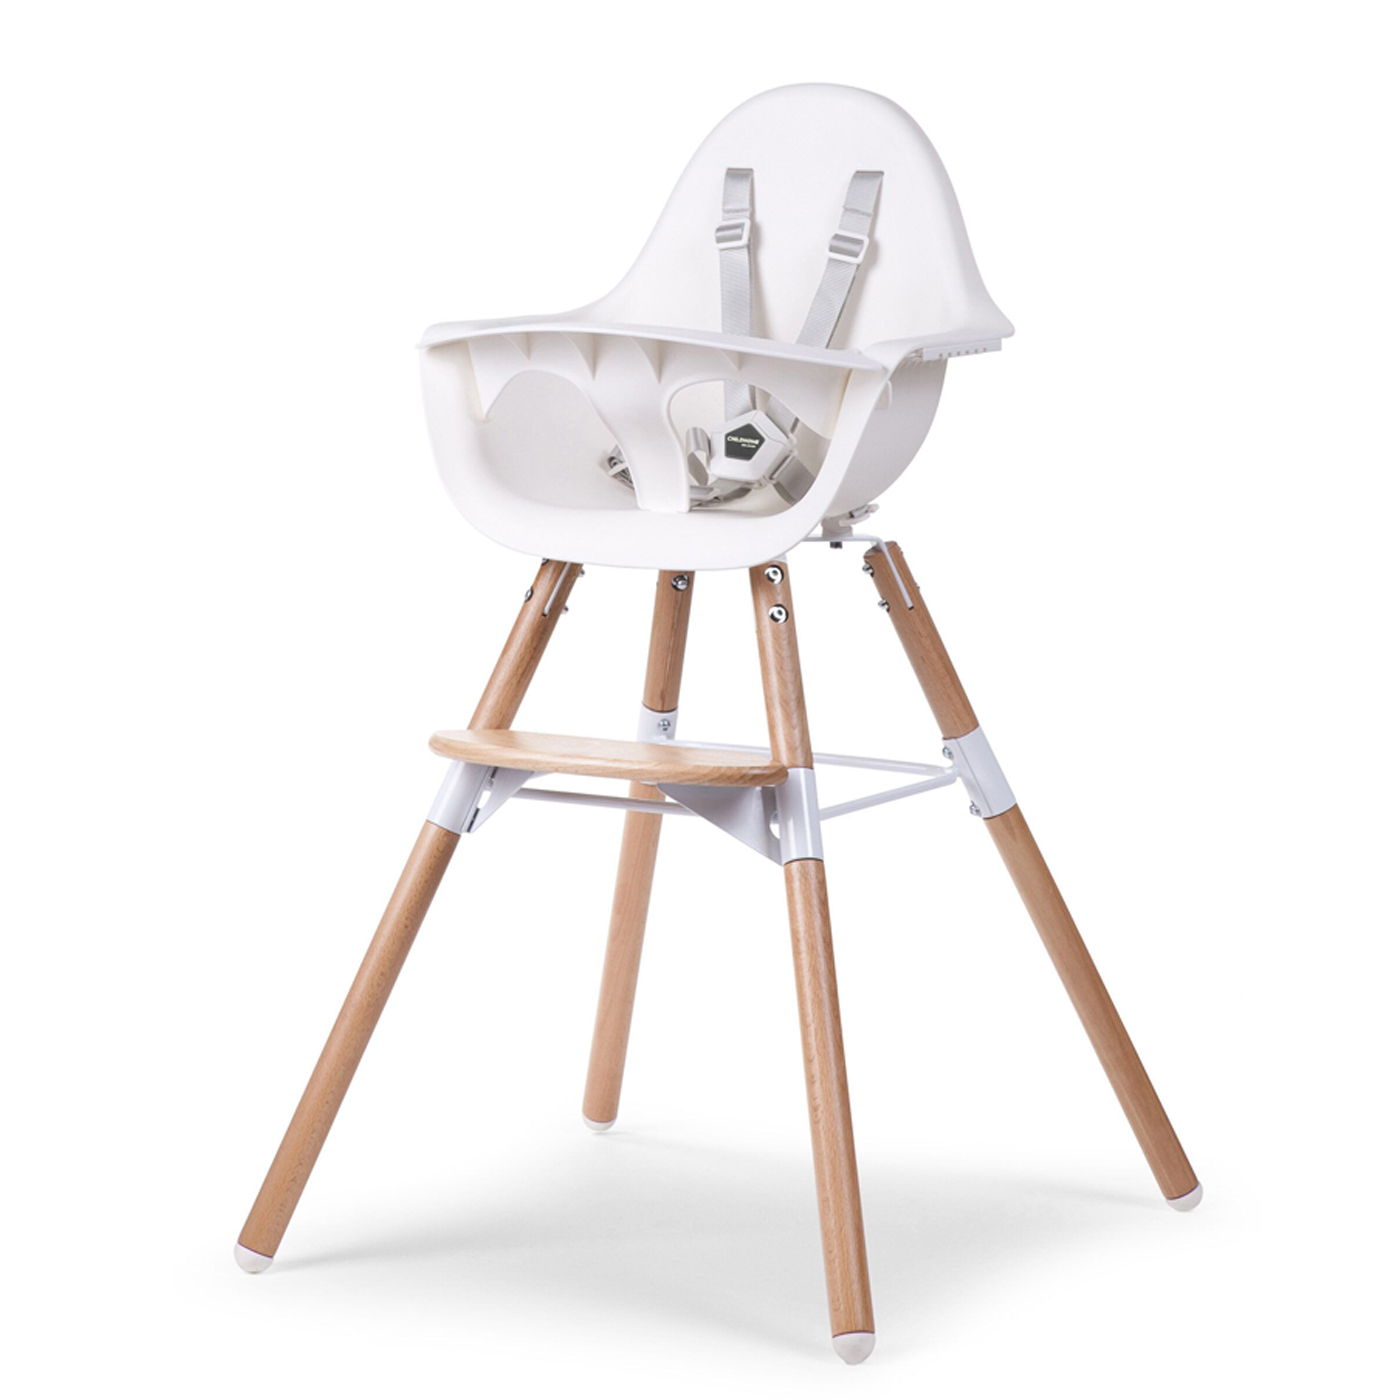 CHILDHOME Childhome Evolu Mama Sandalyesi + Beyaz Ön Tepsi (Silikon Matlı)  | Naturel & Beyaz